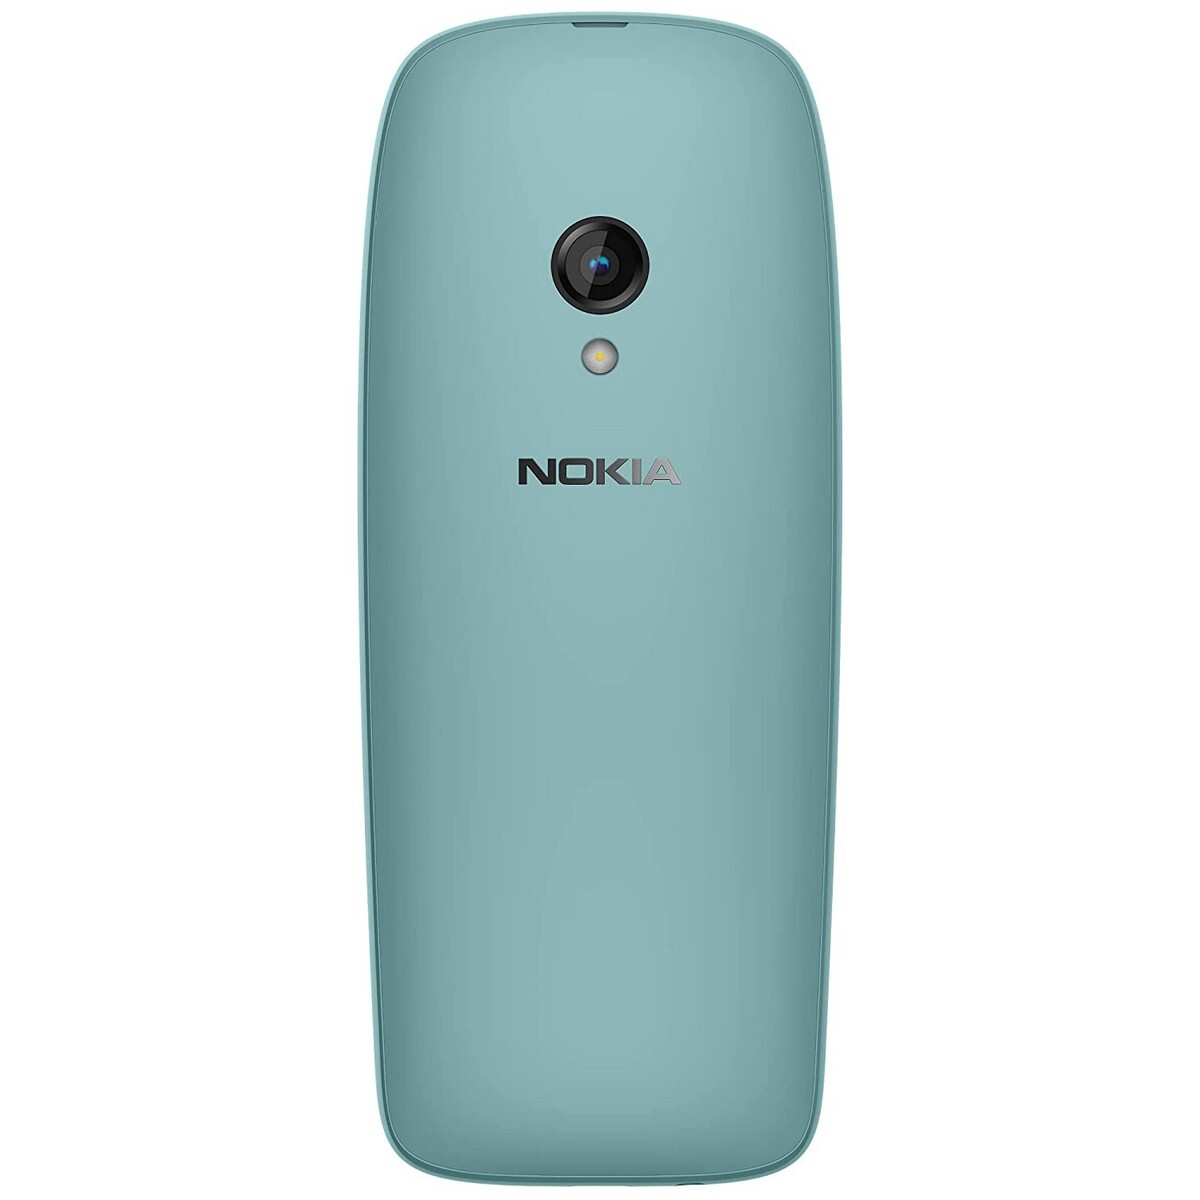 Nokia Mobile Phone 6310 Dual Sim Blue